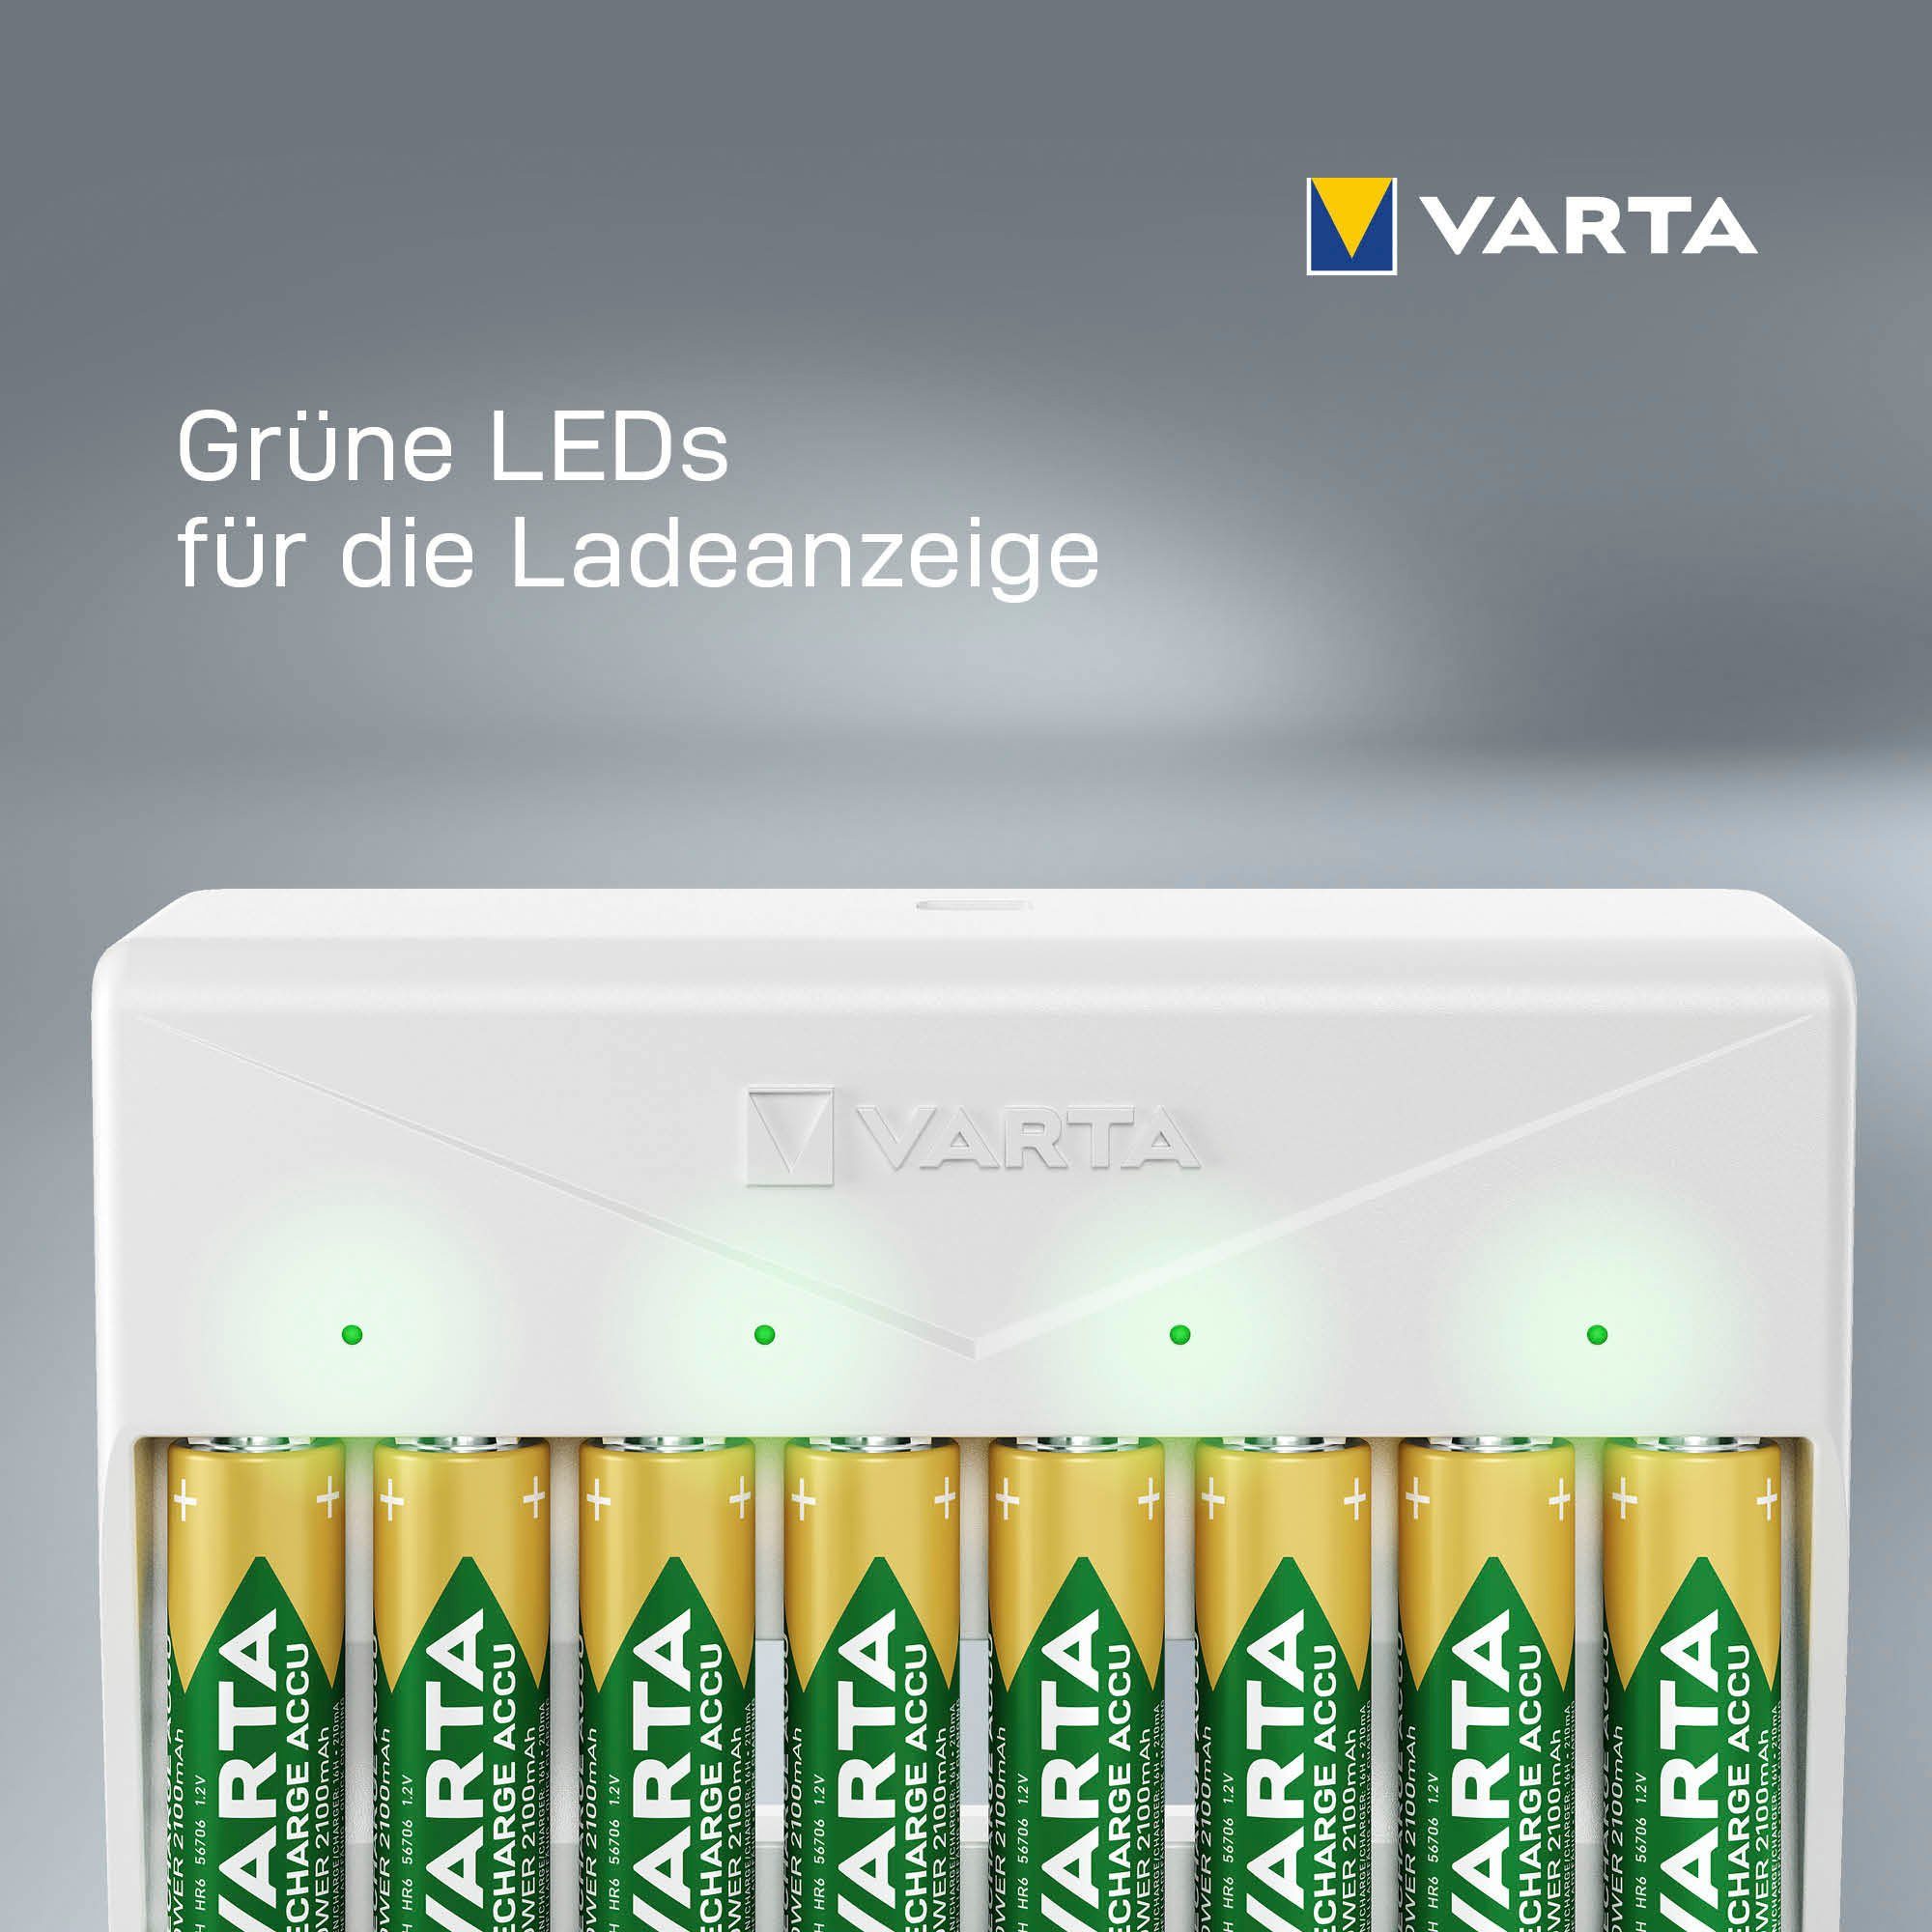 (1-tlg) Multi Charger Batterie-Ladegerät VARTA